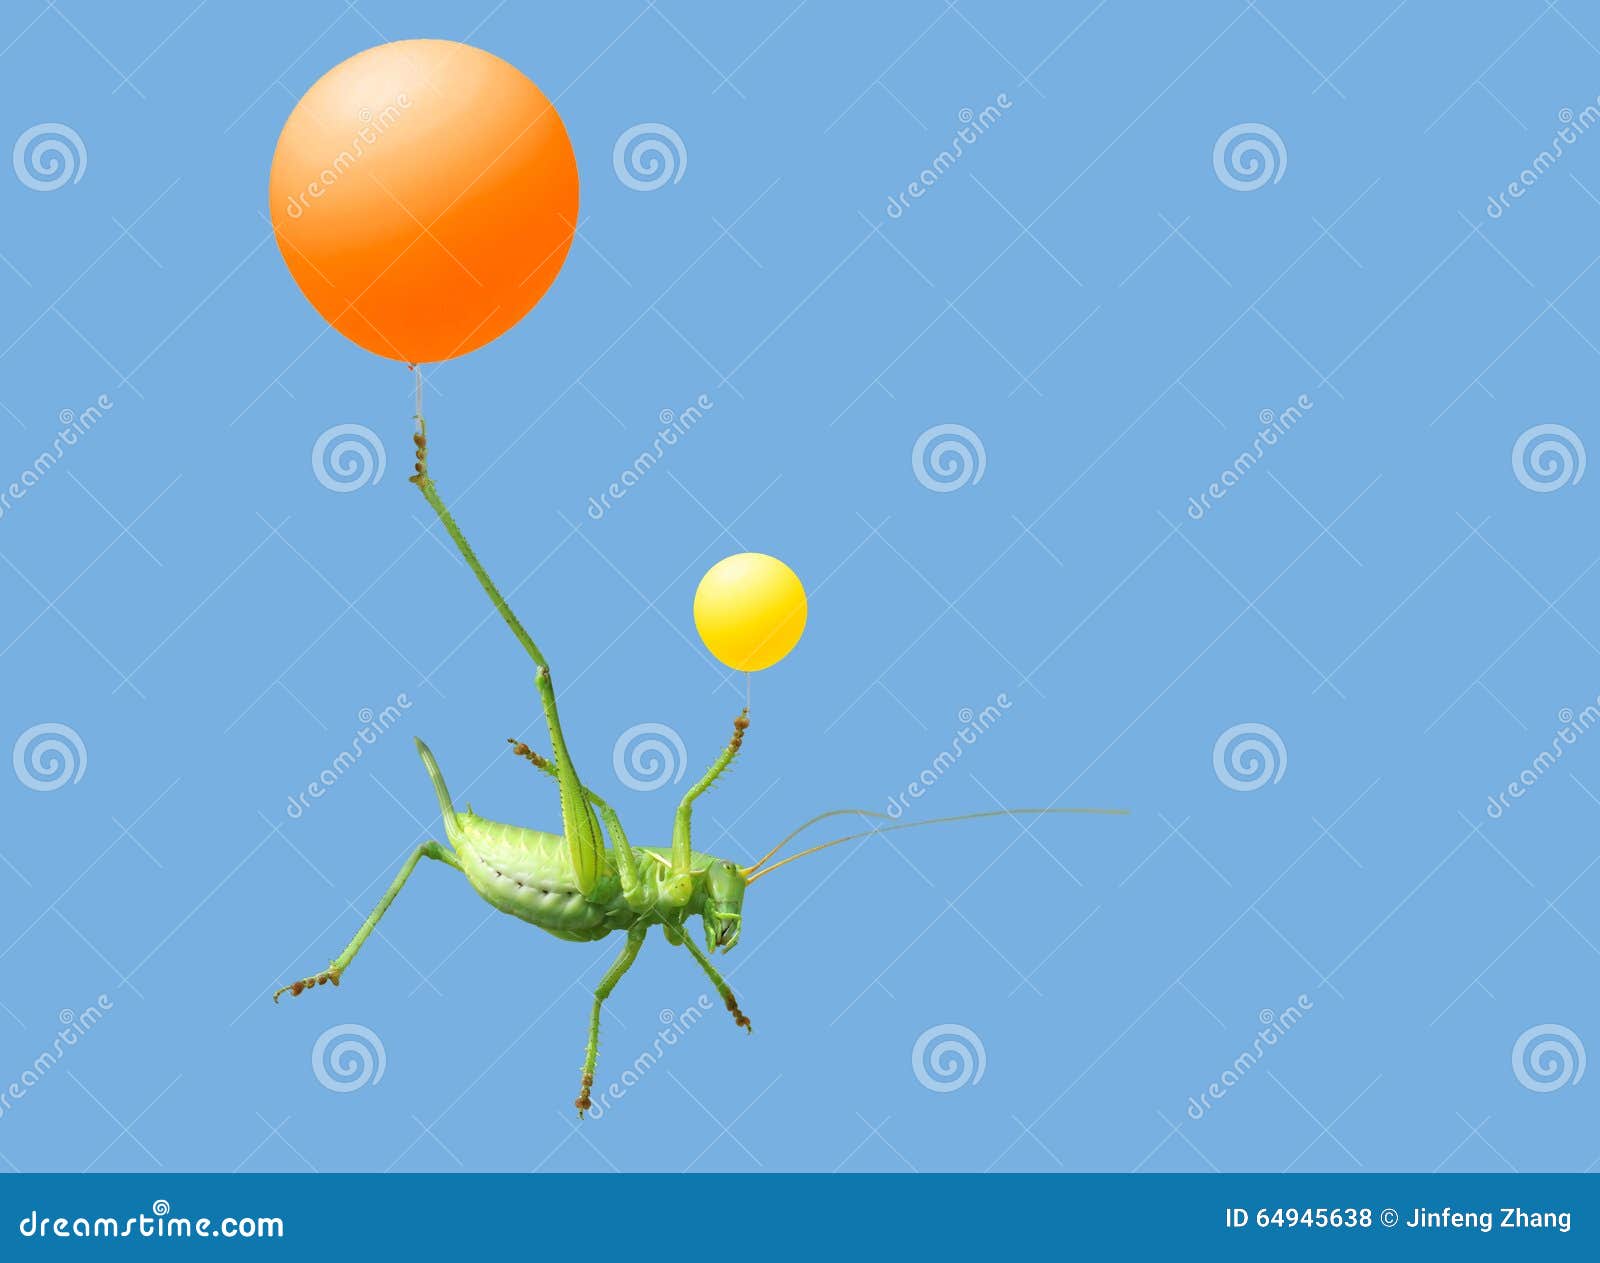 green katydid and airballoon